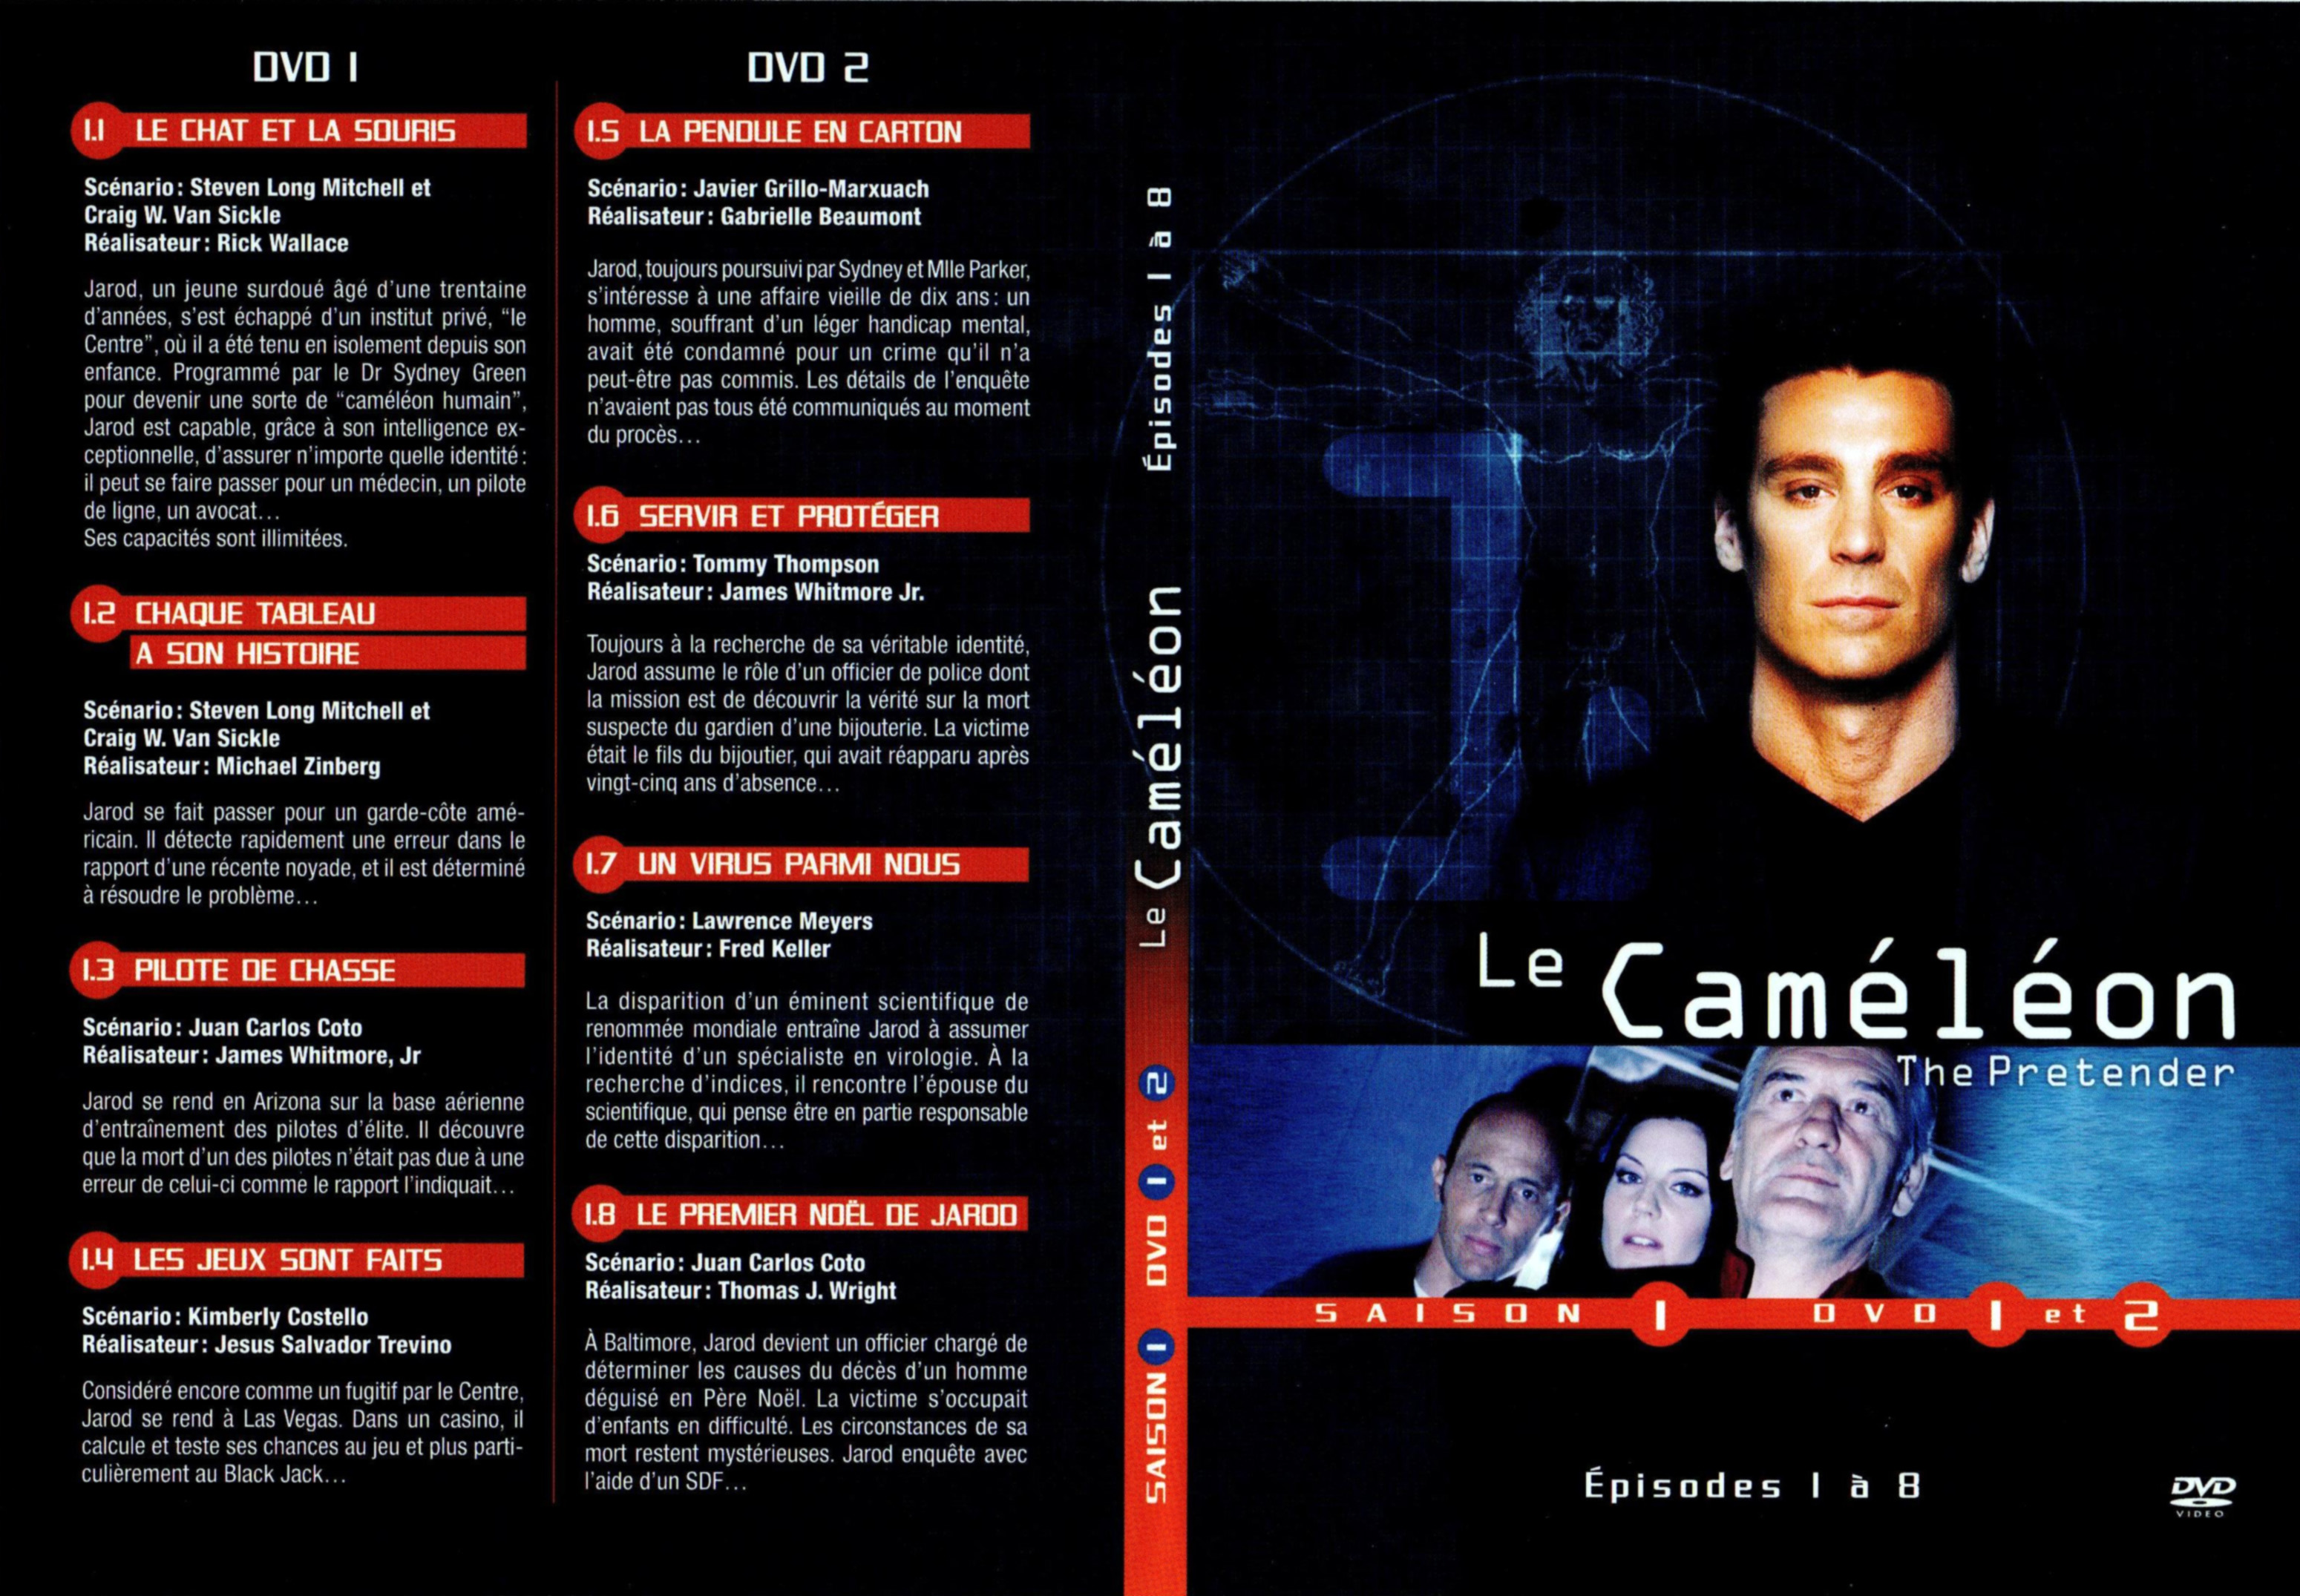 Jaquette DVD Le camlon Saison 1 DVD 1